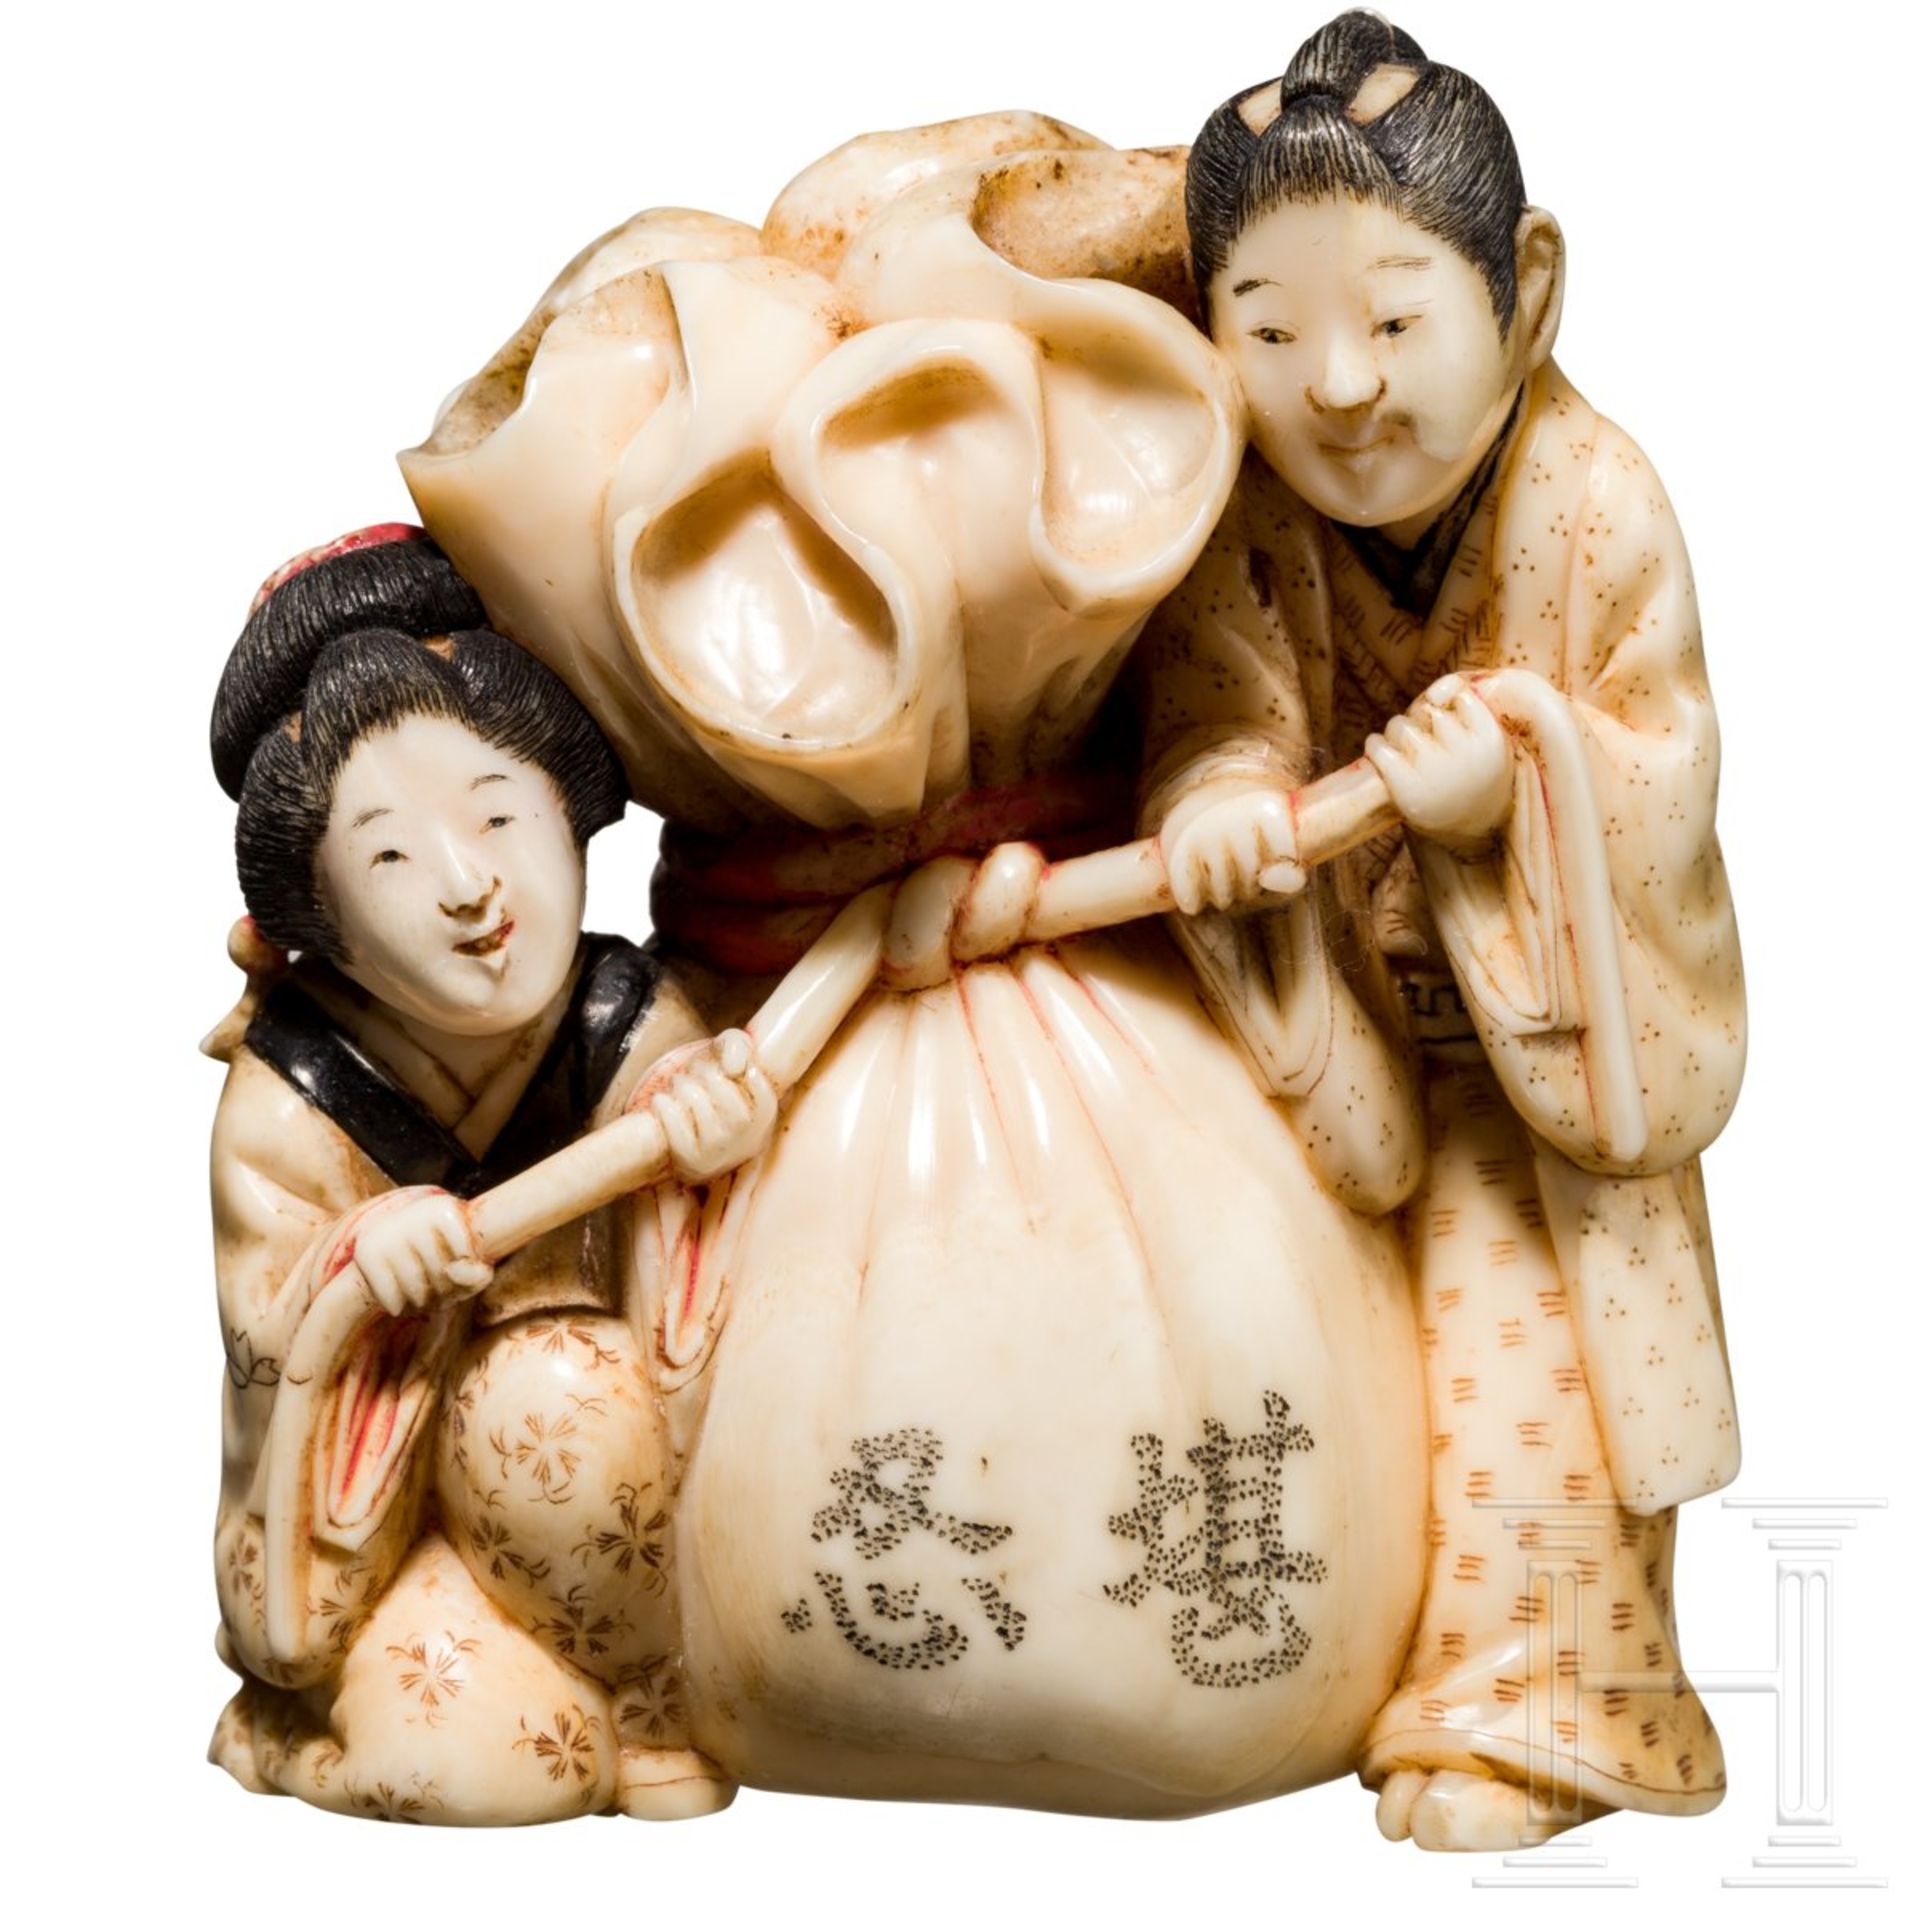 Okimono in Form von Hoteis Glückssack, Japan, Meiji-/Taisho-PeriodeFein geschnitzte Darstellung